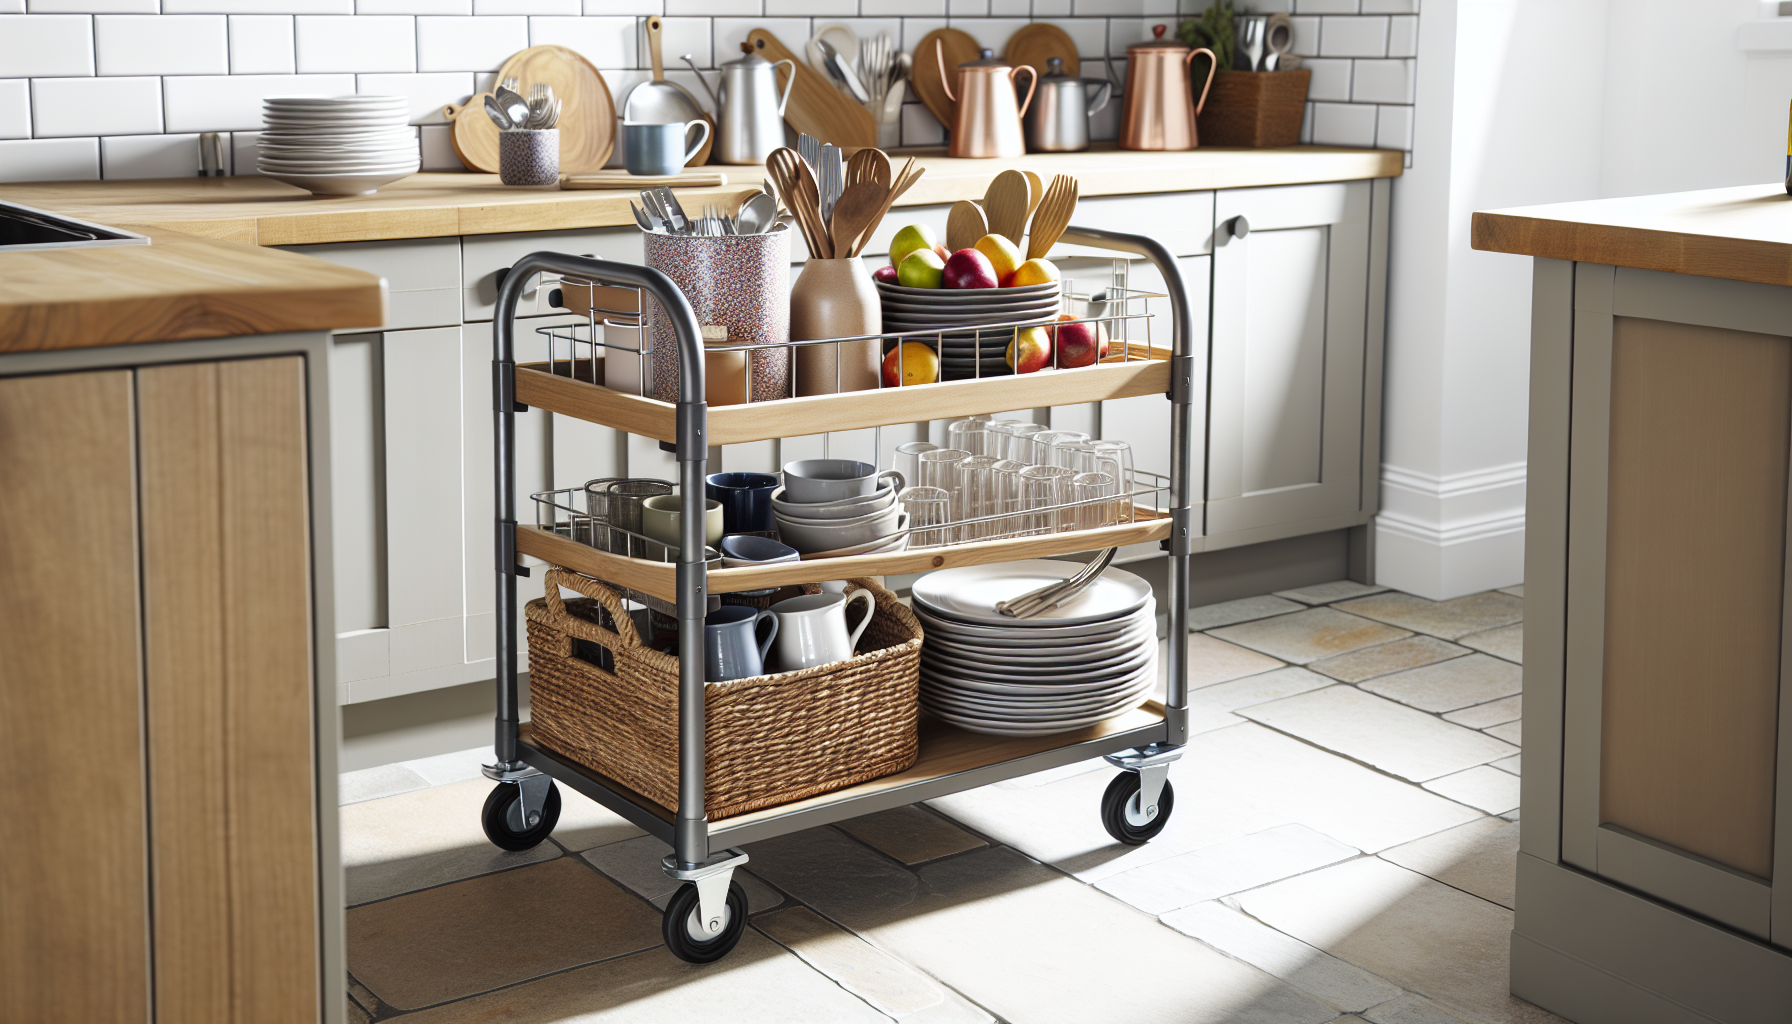 Versatile utility cart in a kitchen